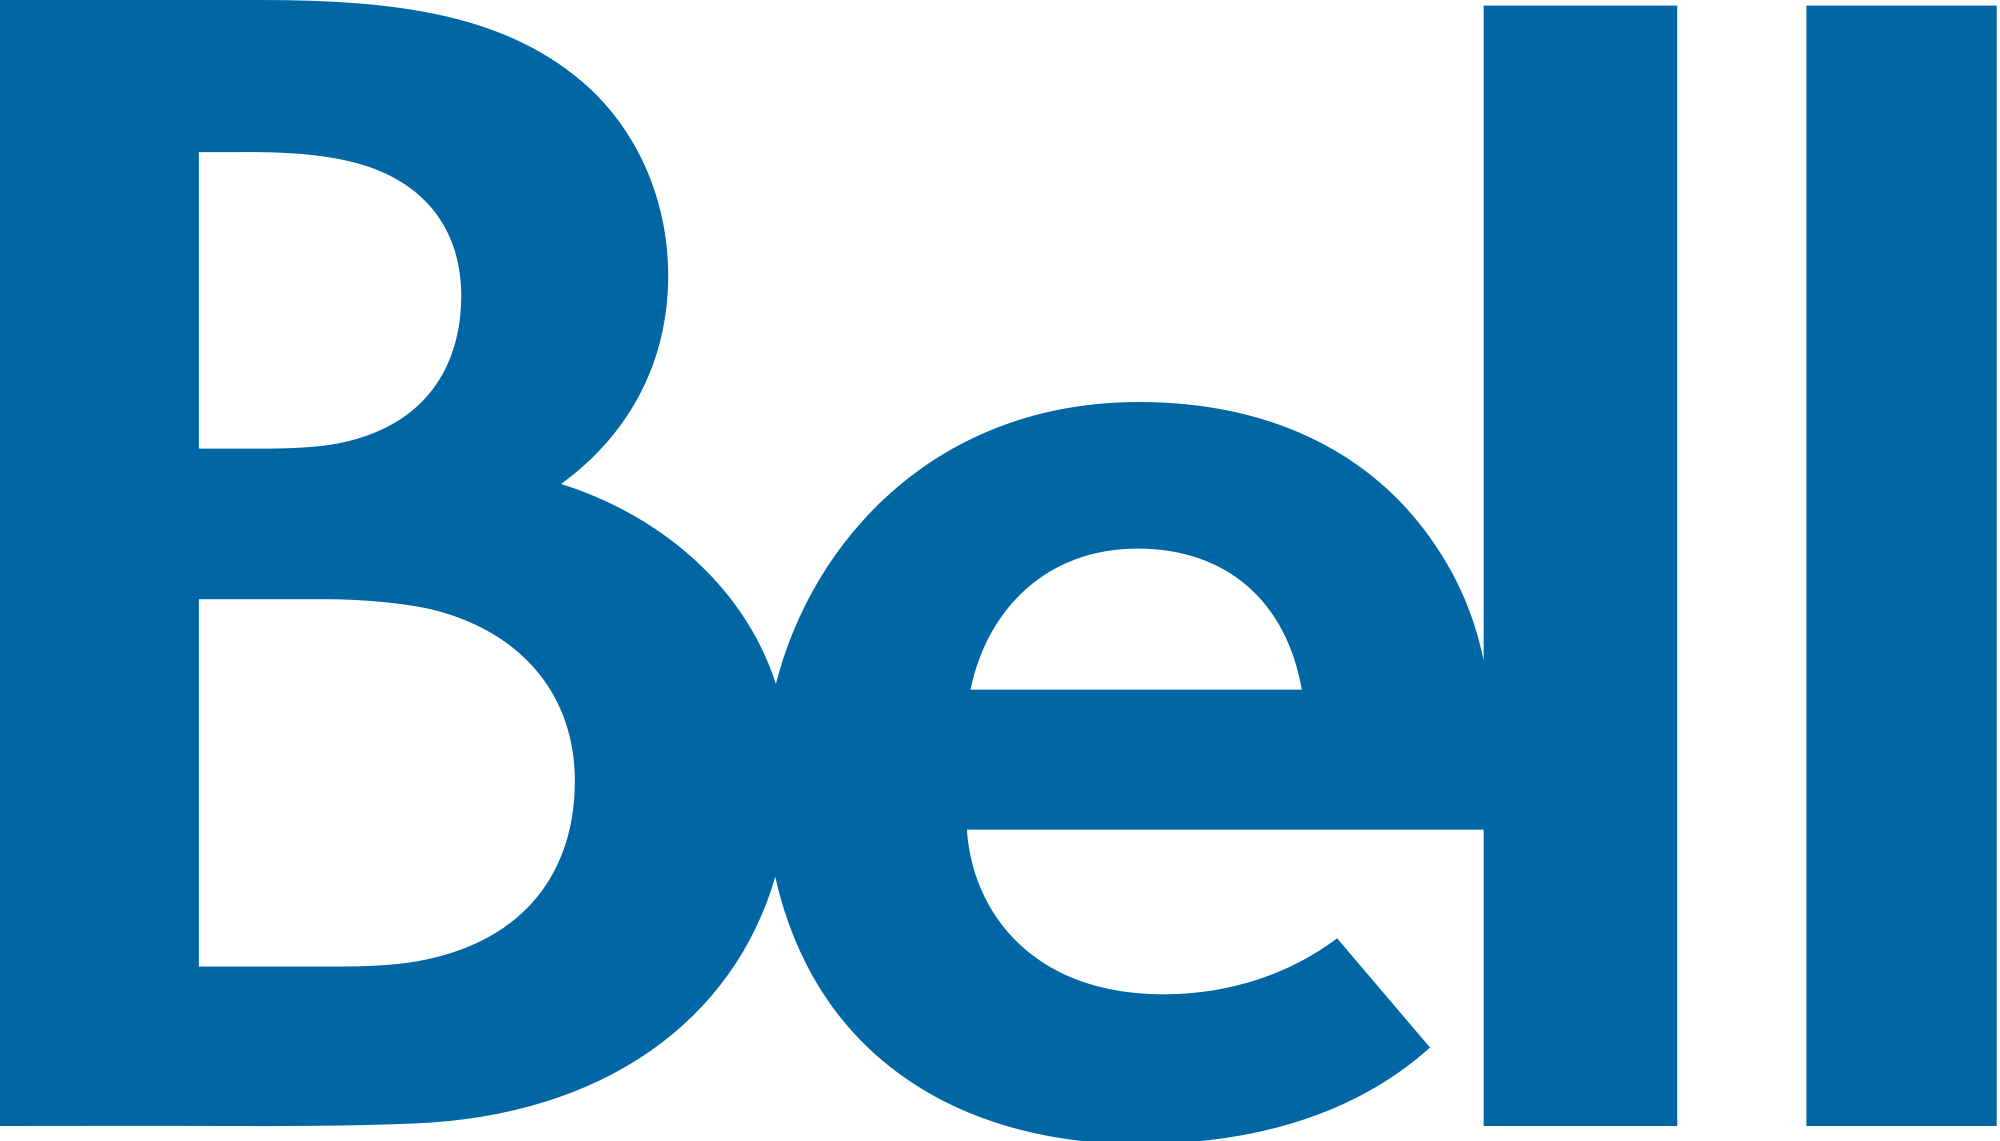 https://cdn.mobilesyrup.com/wp-content/uploads/2017/08/Bell_logo.png